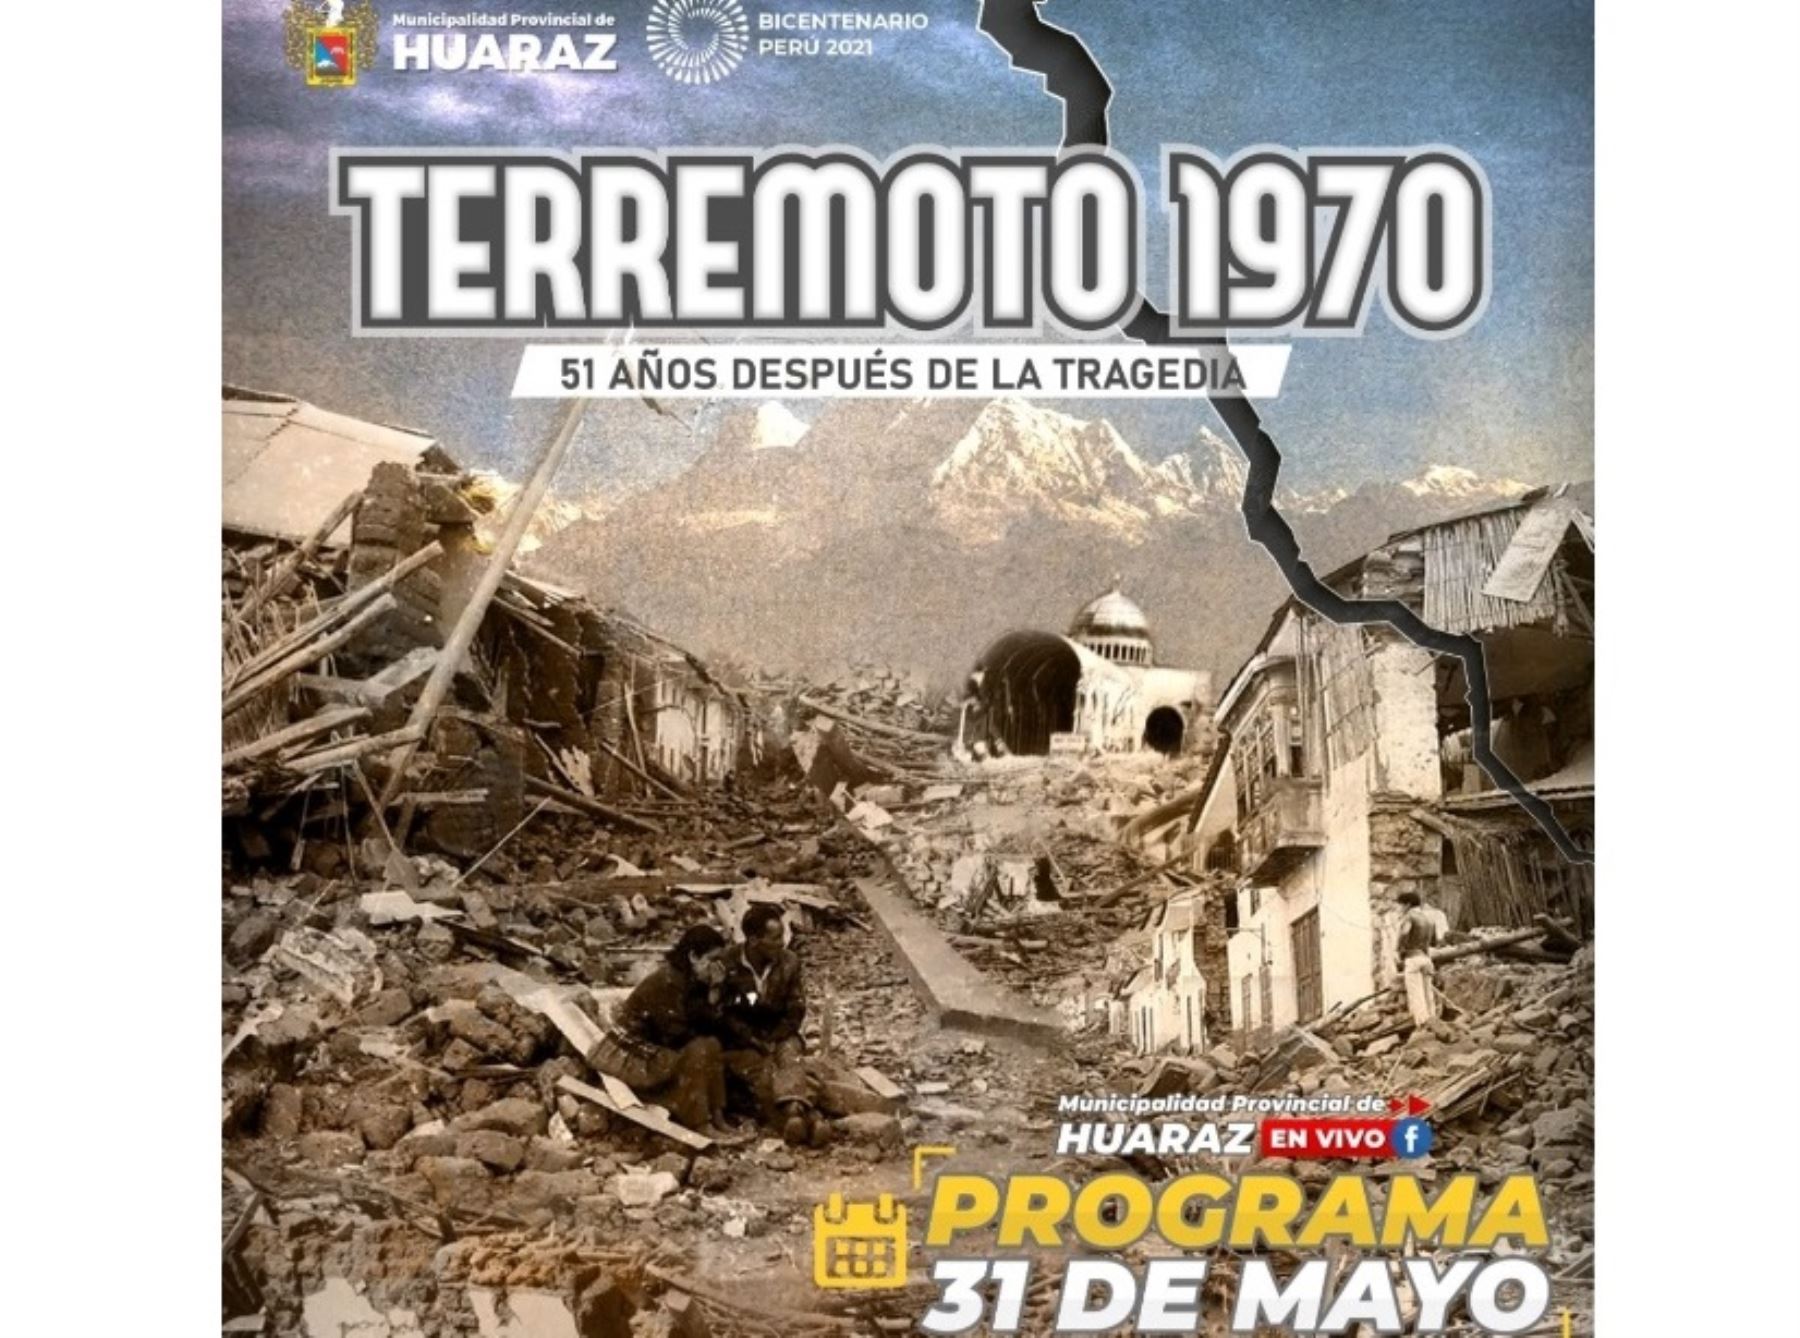 Con misa y otras actividades, Huaraz recuerda hoy a las más de 60,000 víctimas del terremoto de 1970. Una tragedia que enlutó a los peruanos hace 51 años. ANDINA/Difusión